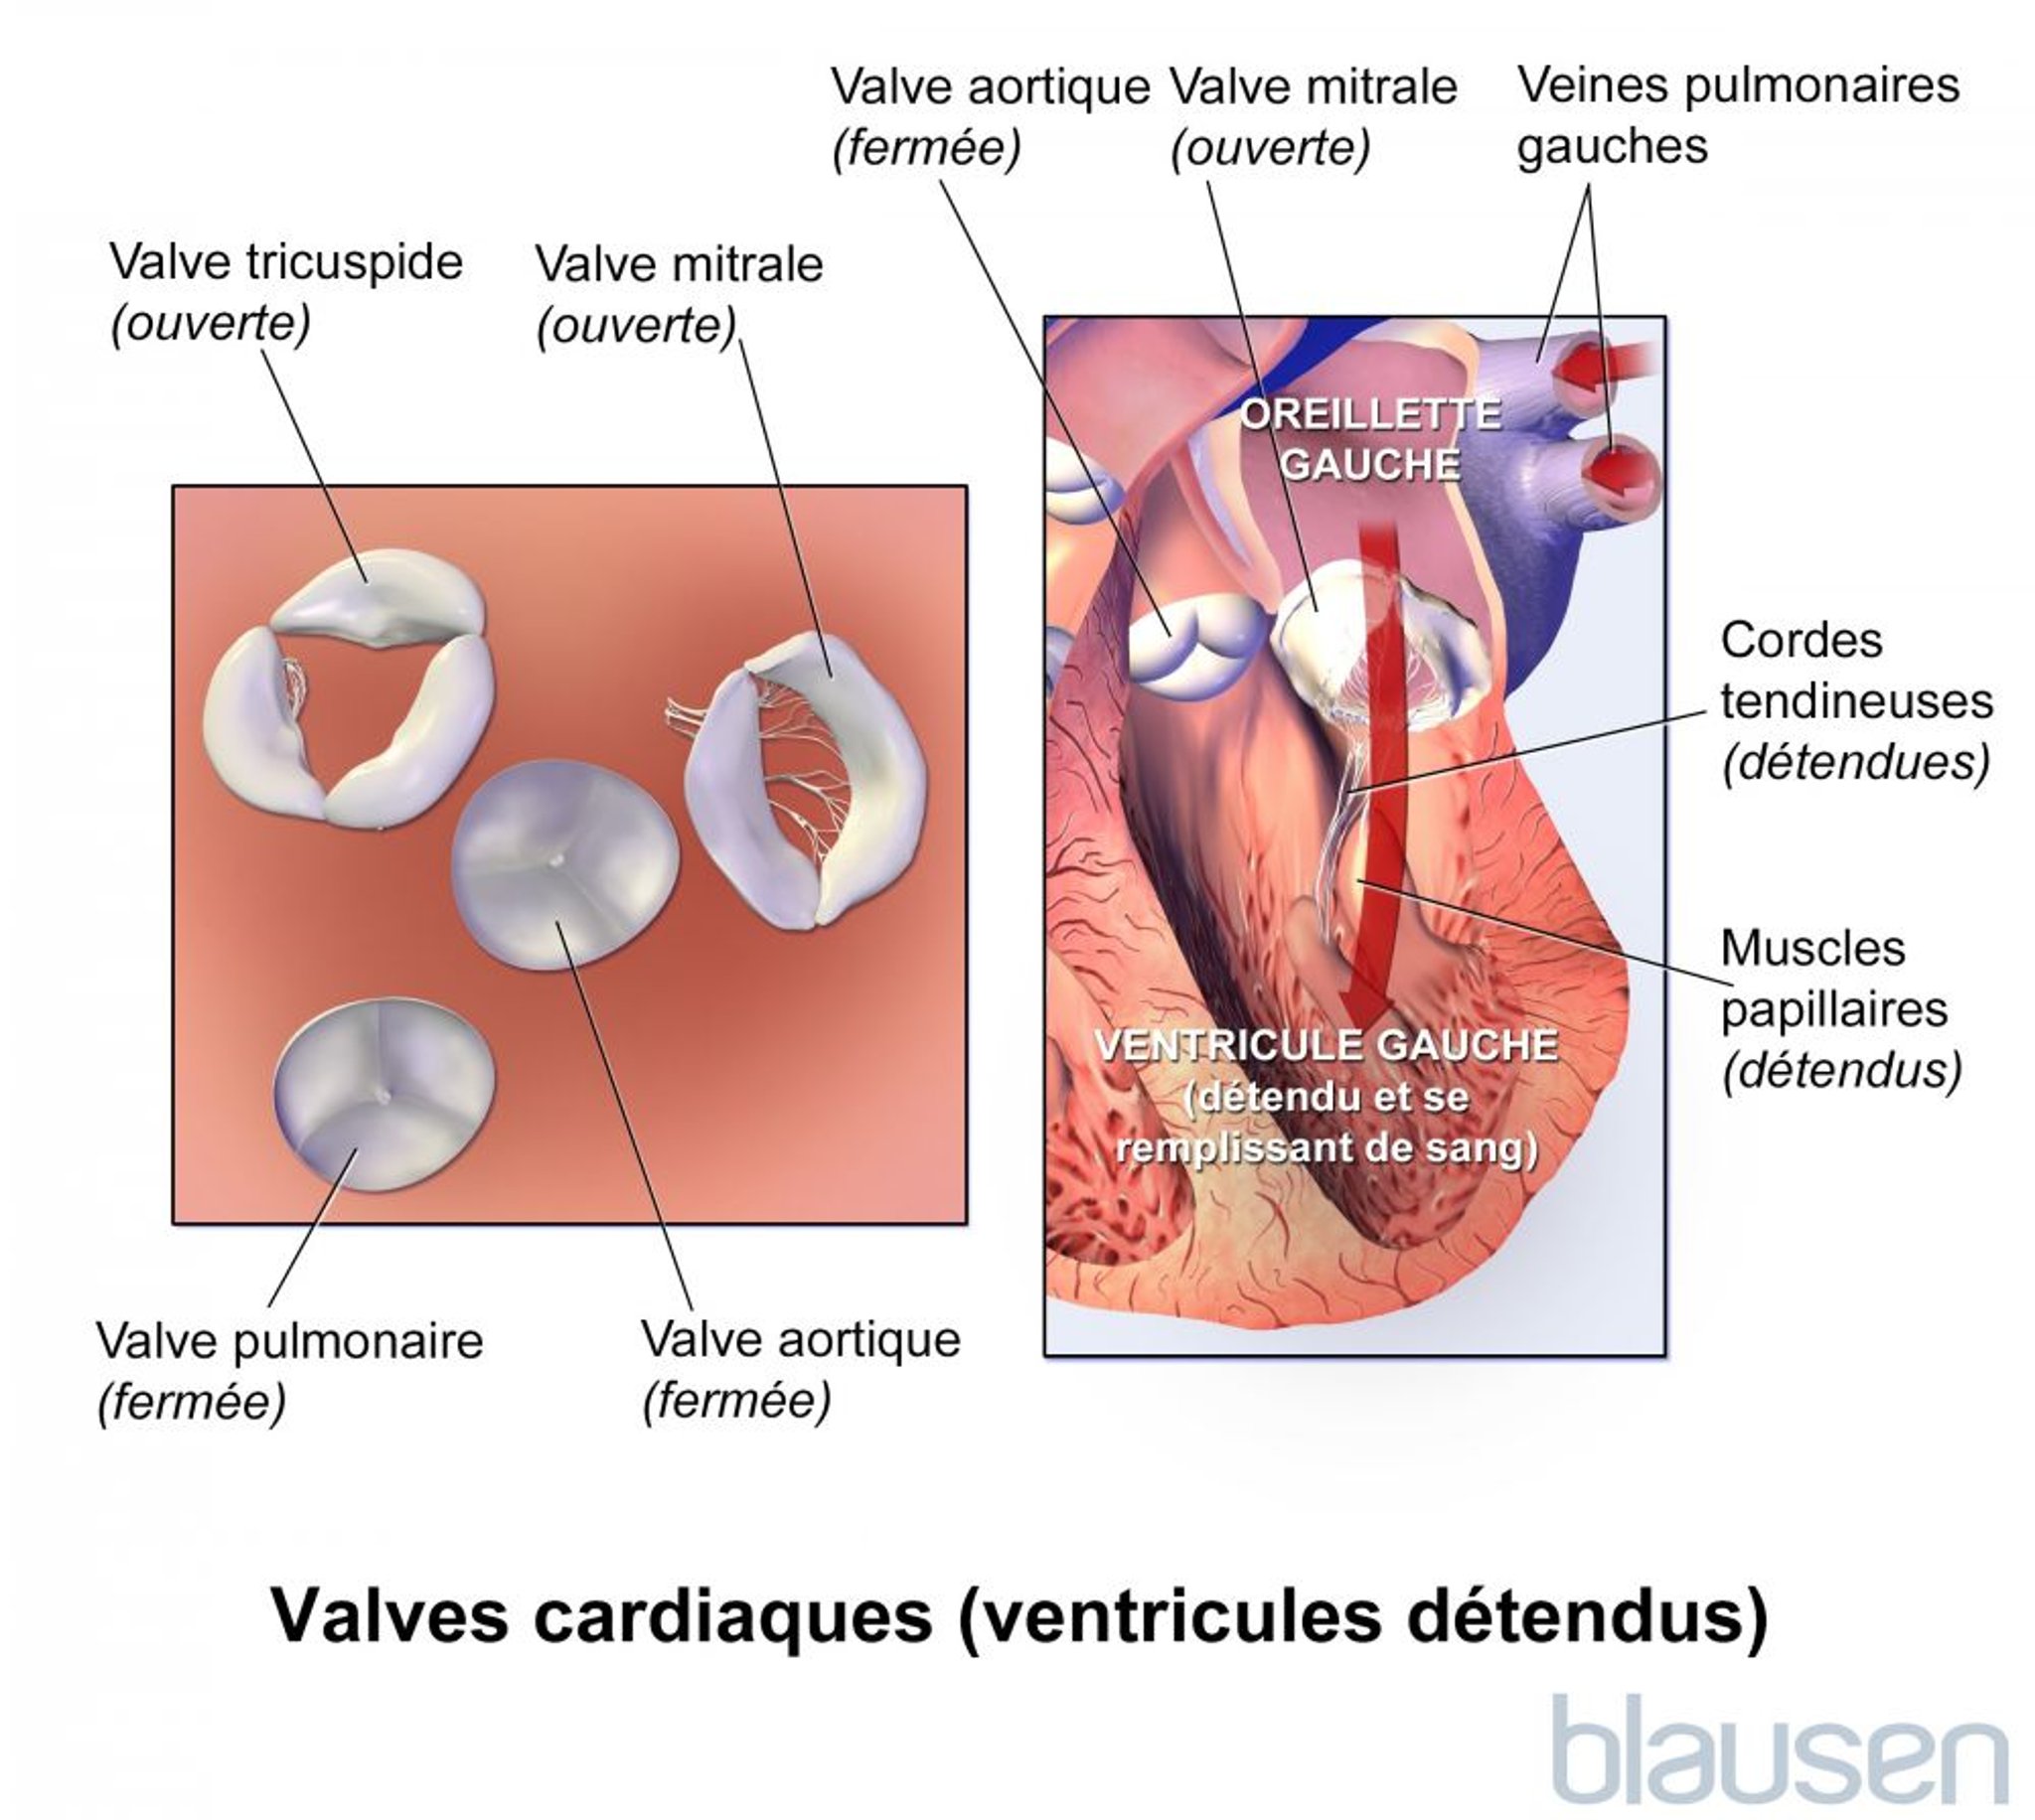 Valves cardiaques (ventricules relâchés)